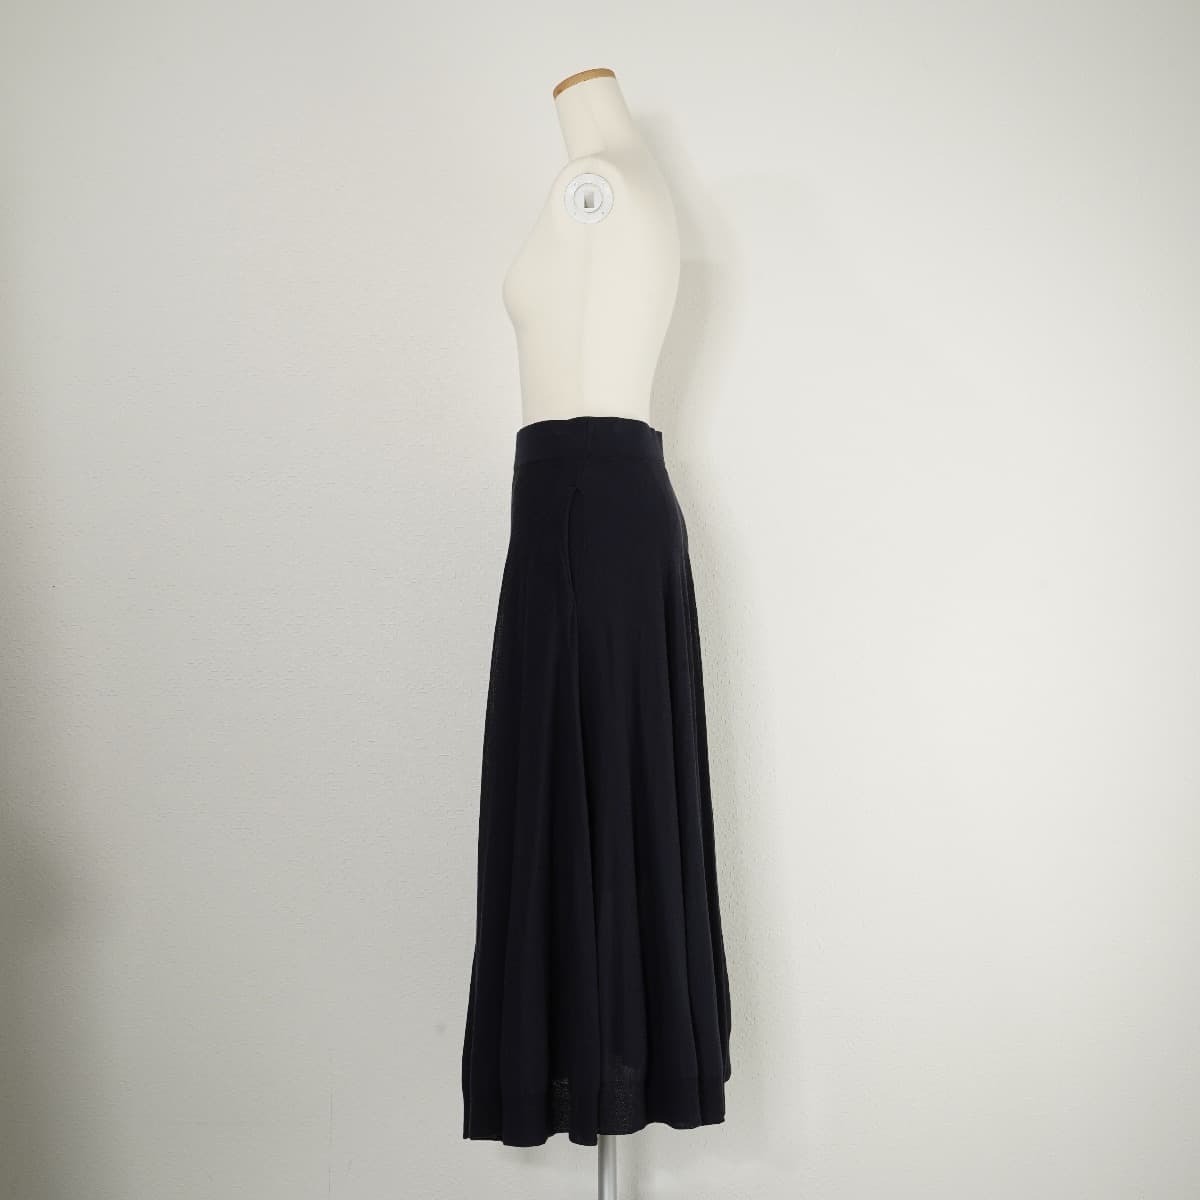 ADIEU TRISTESSE Adieu Tristesse flair long skirt knitted skirt navy blue 